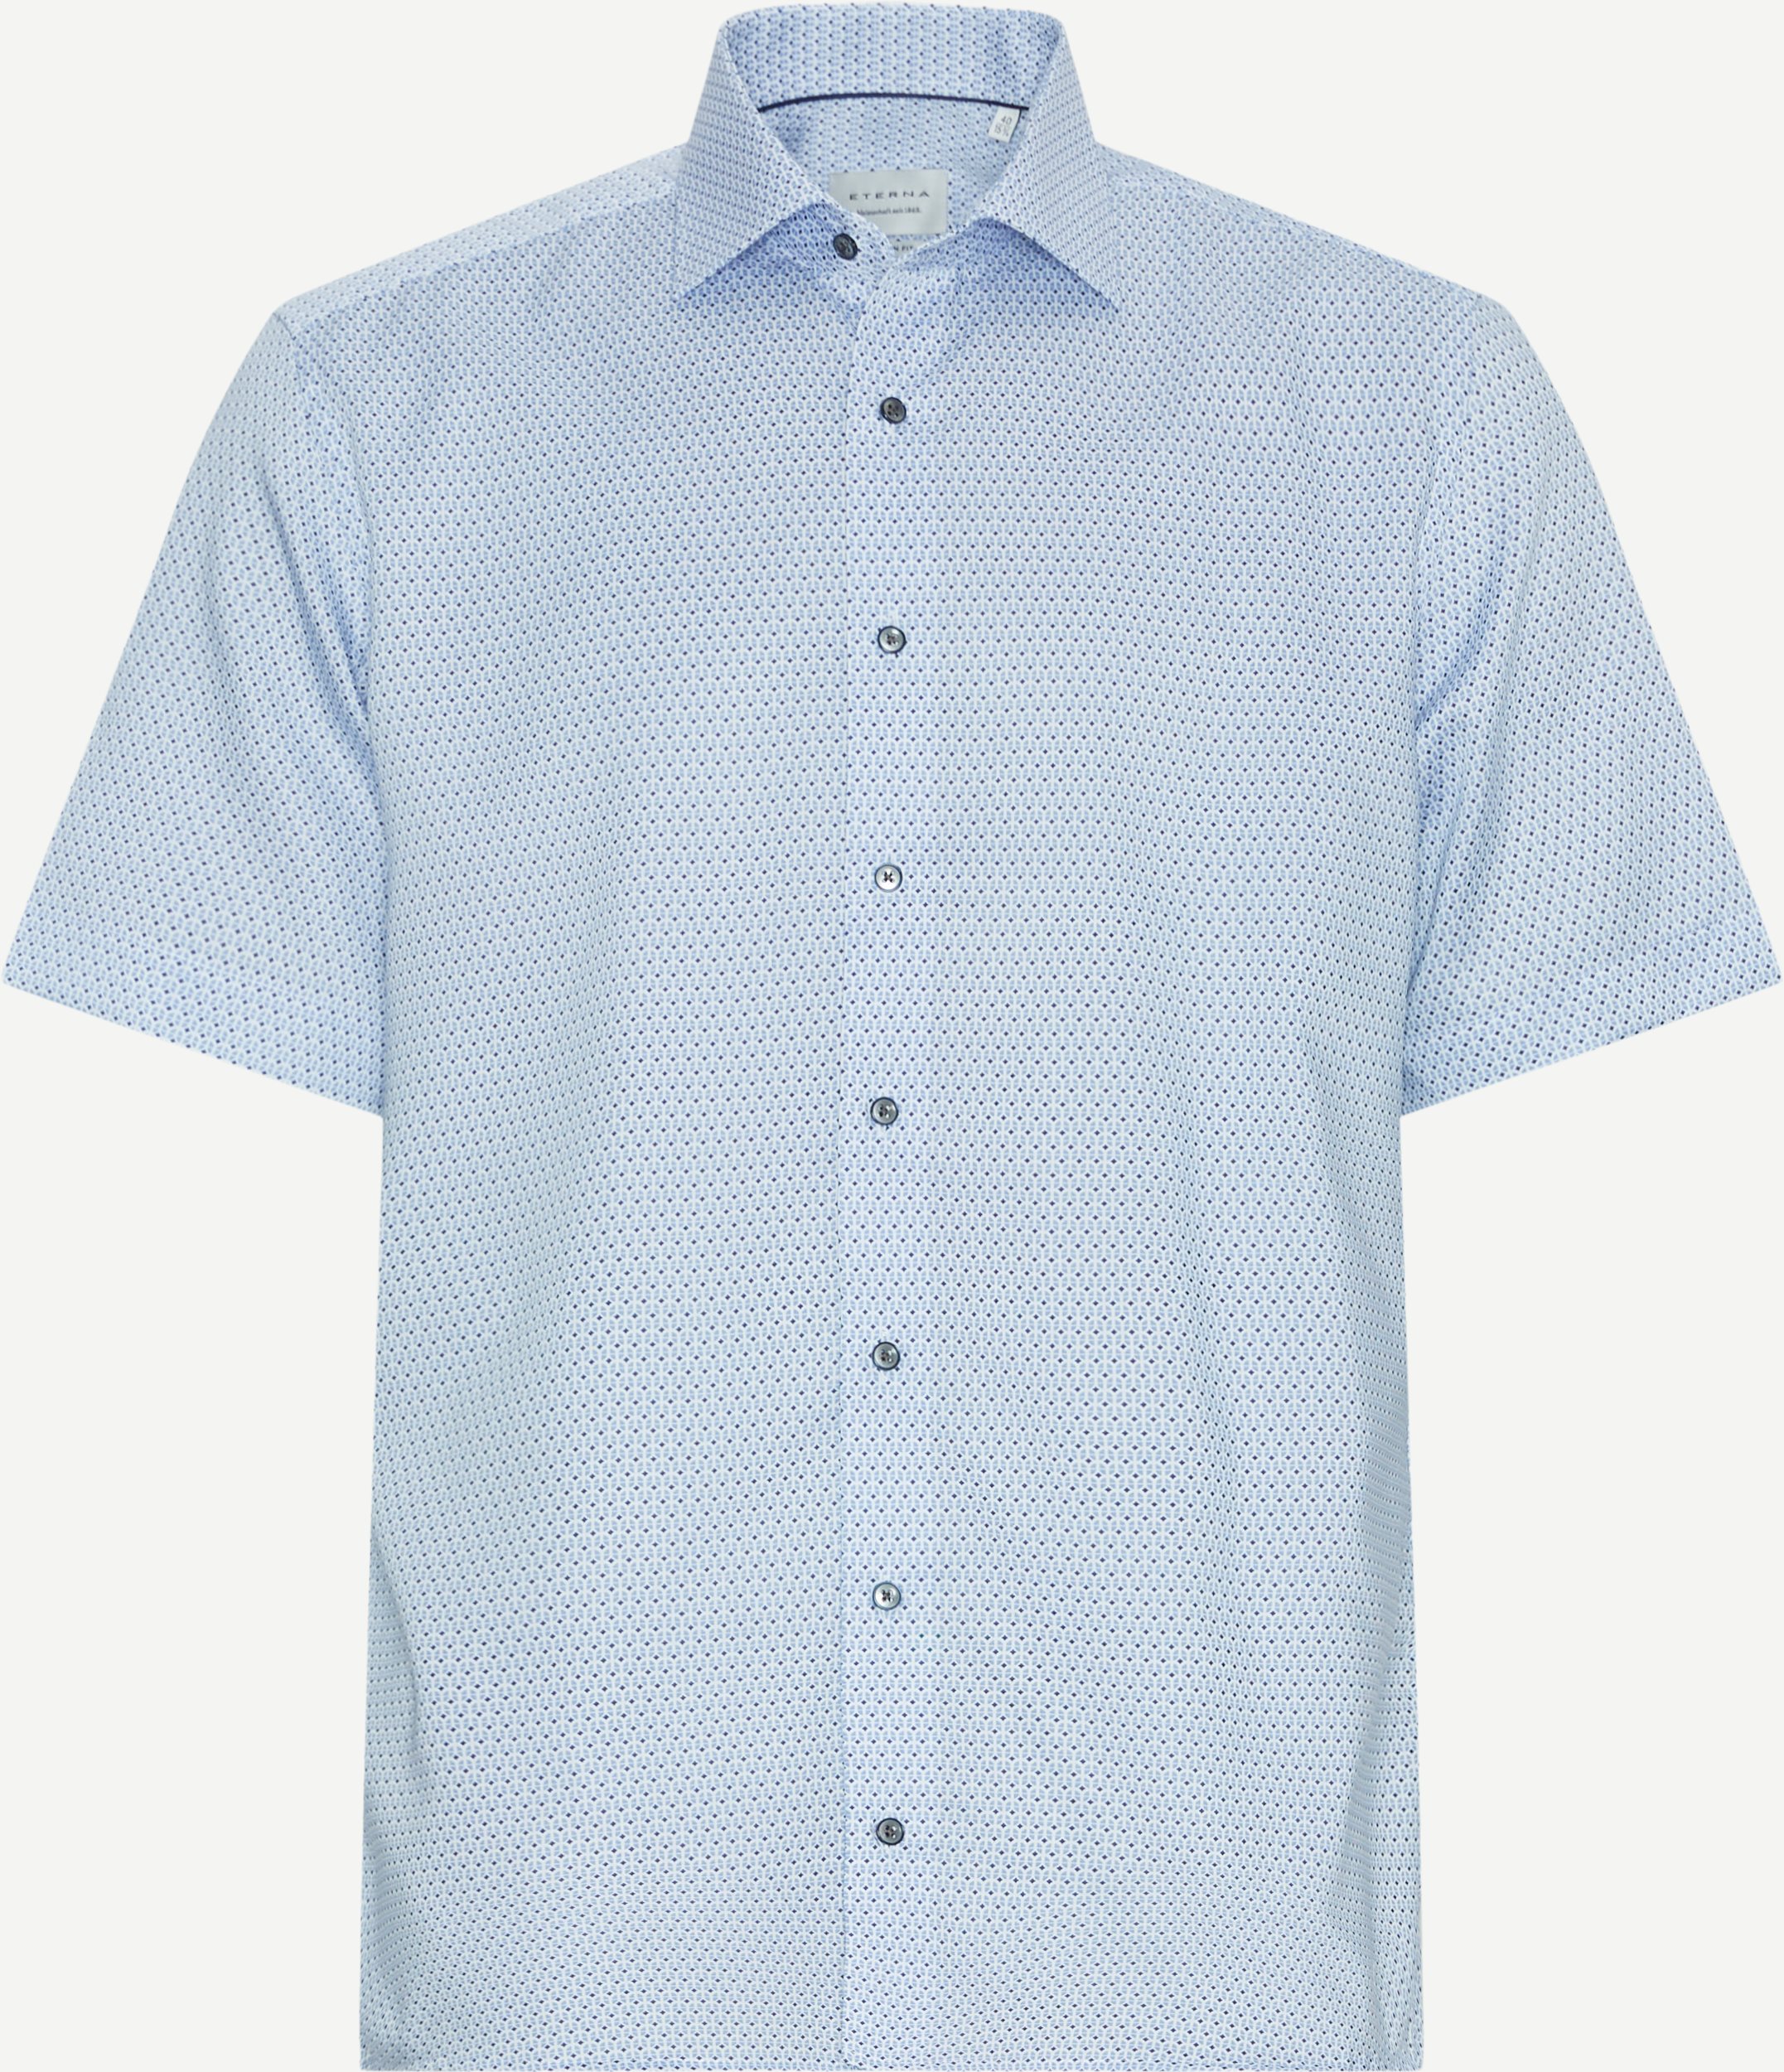 Eterna Kortærmede skjorter 4163 C18K Blå